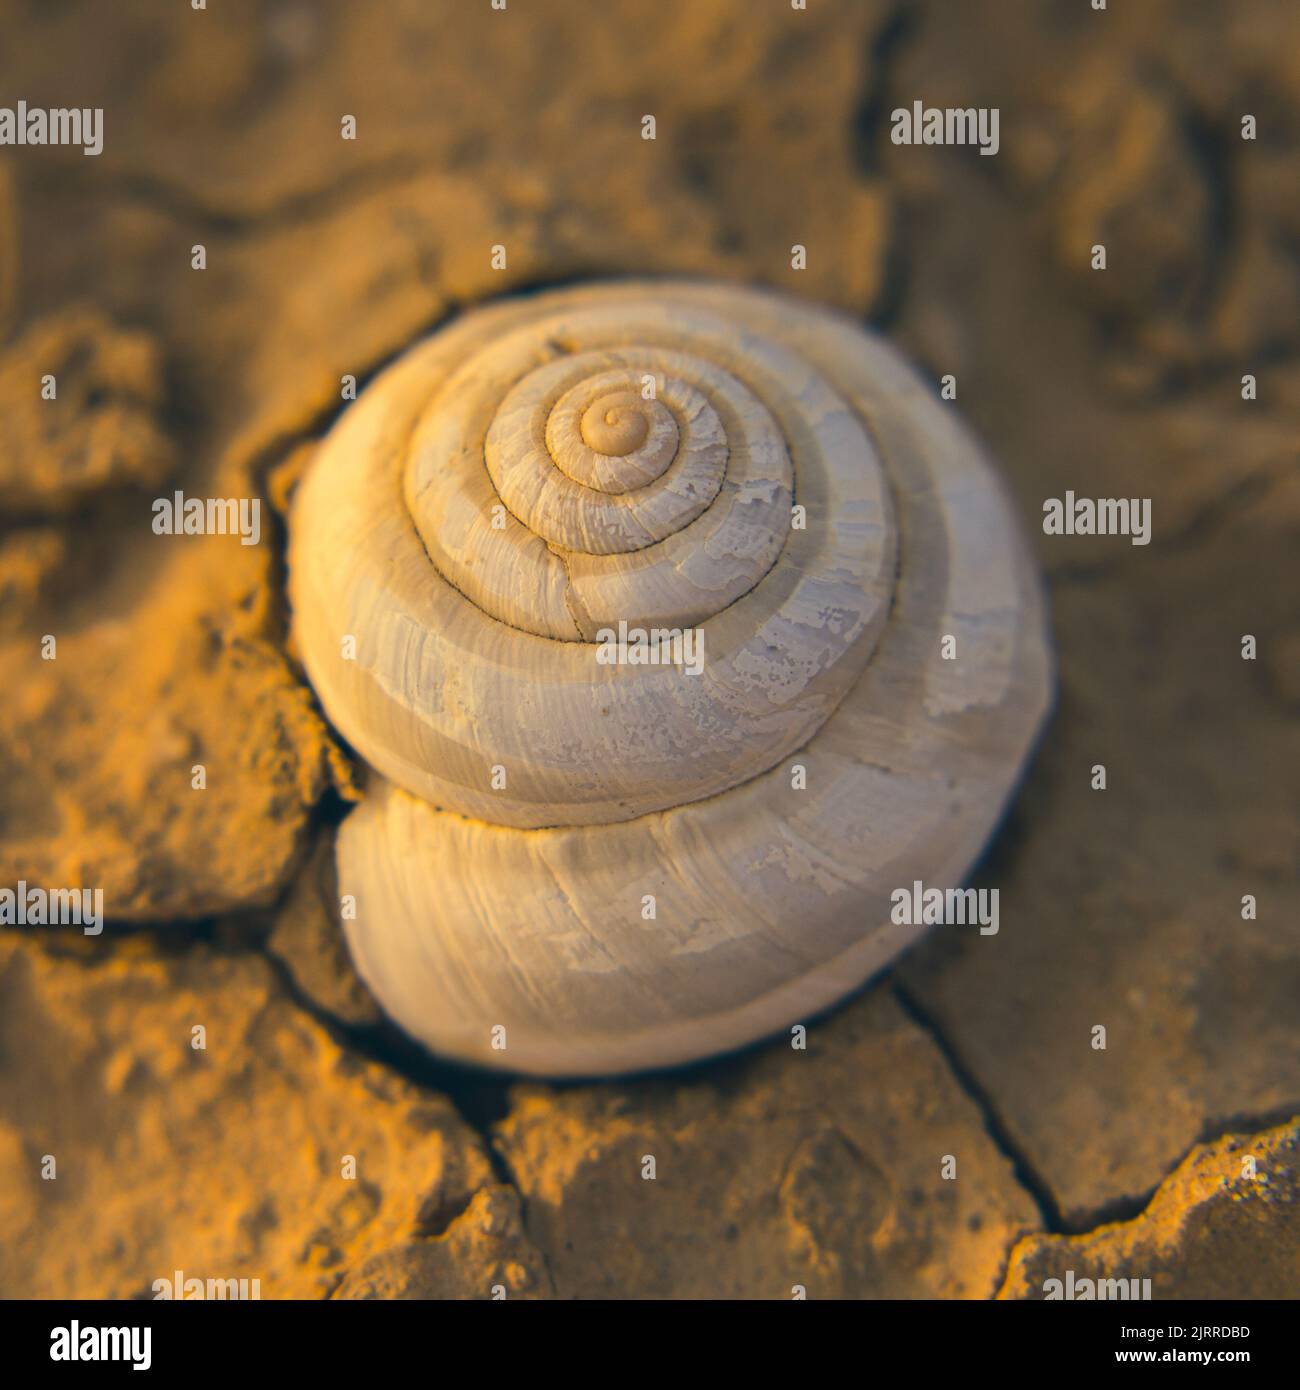 desert snail shells